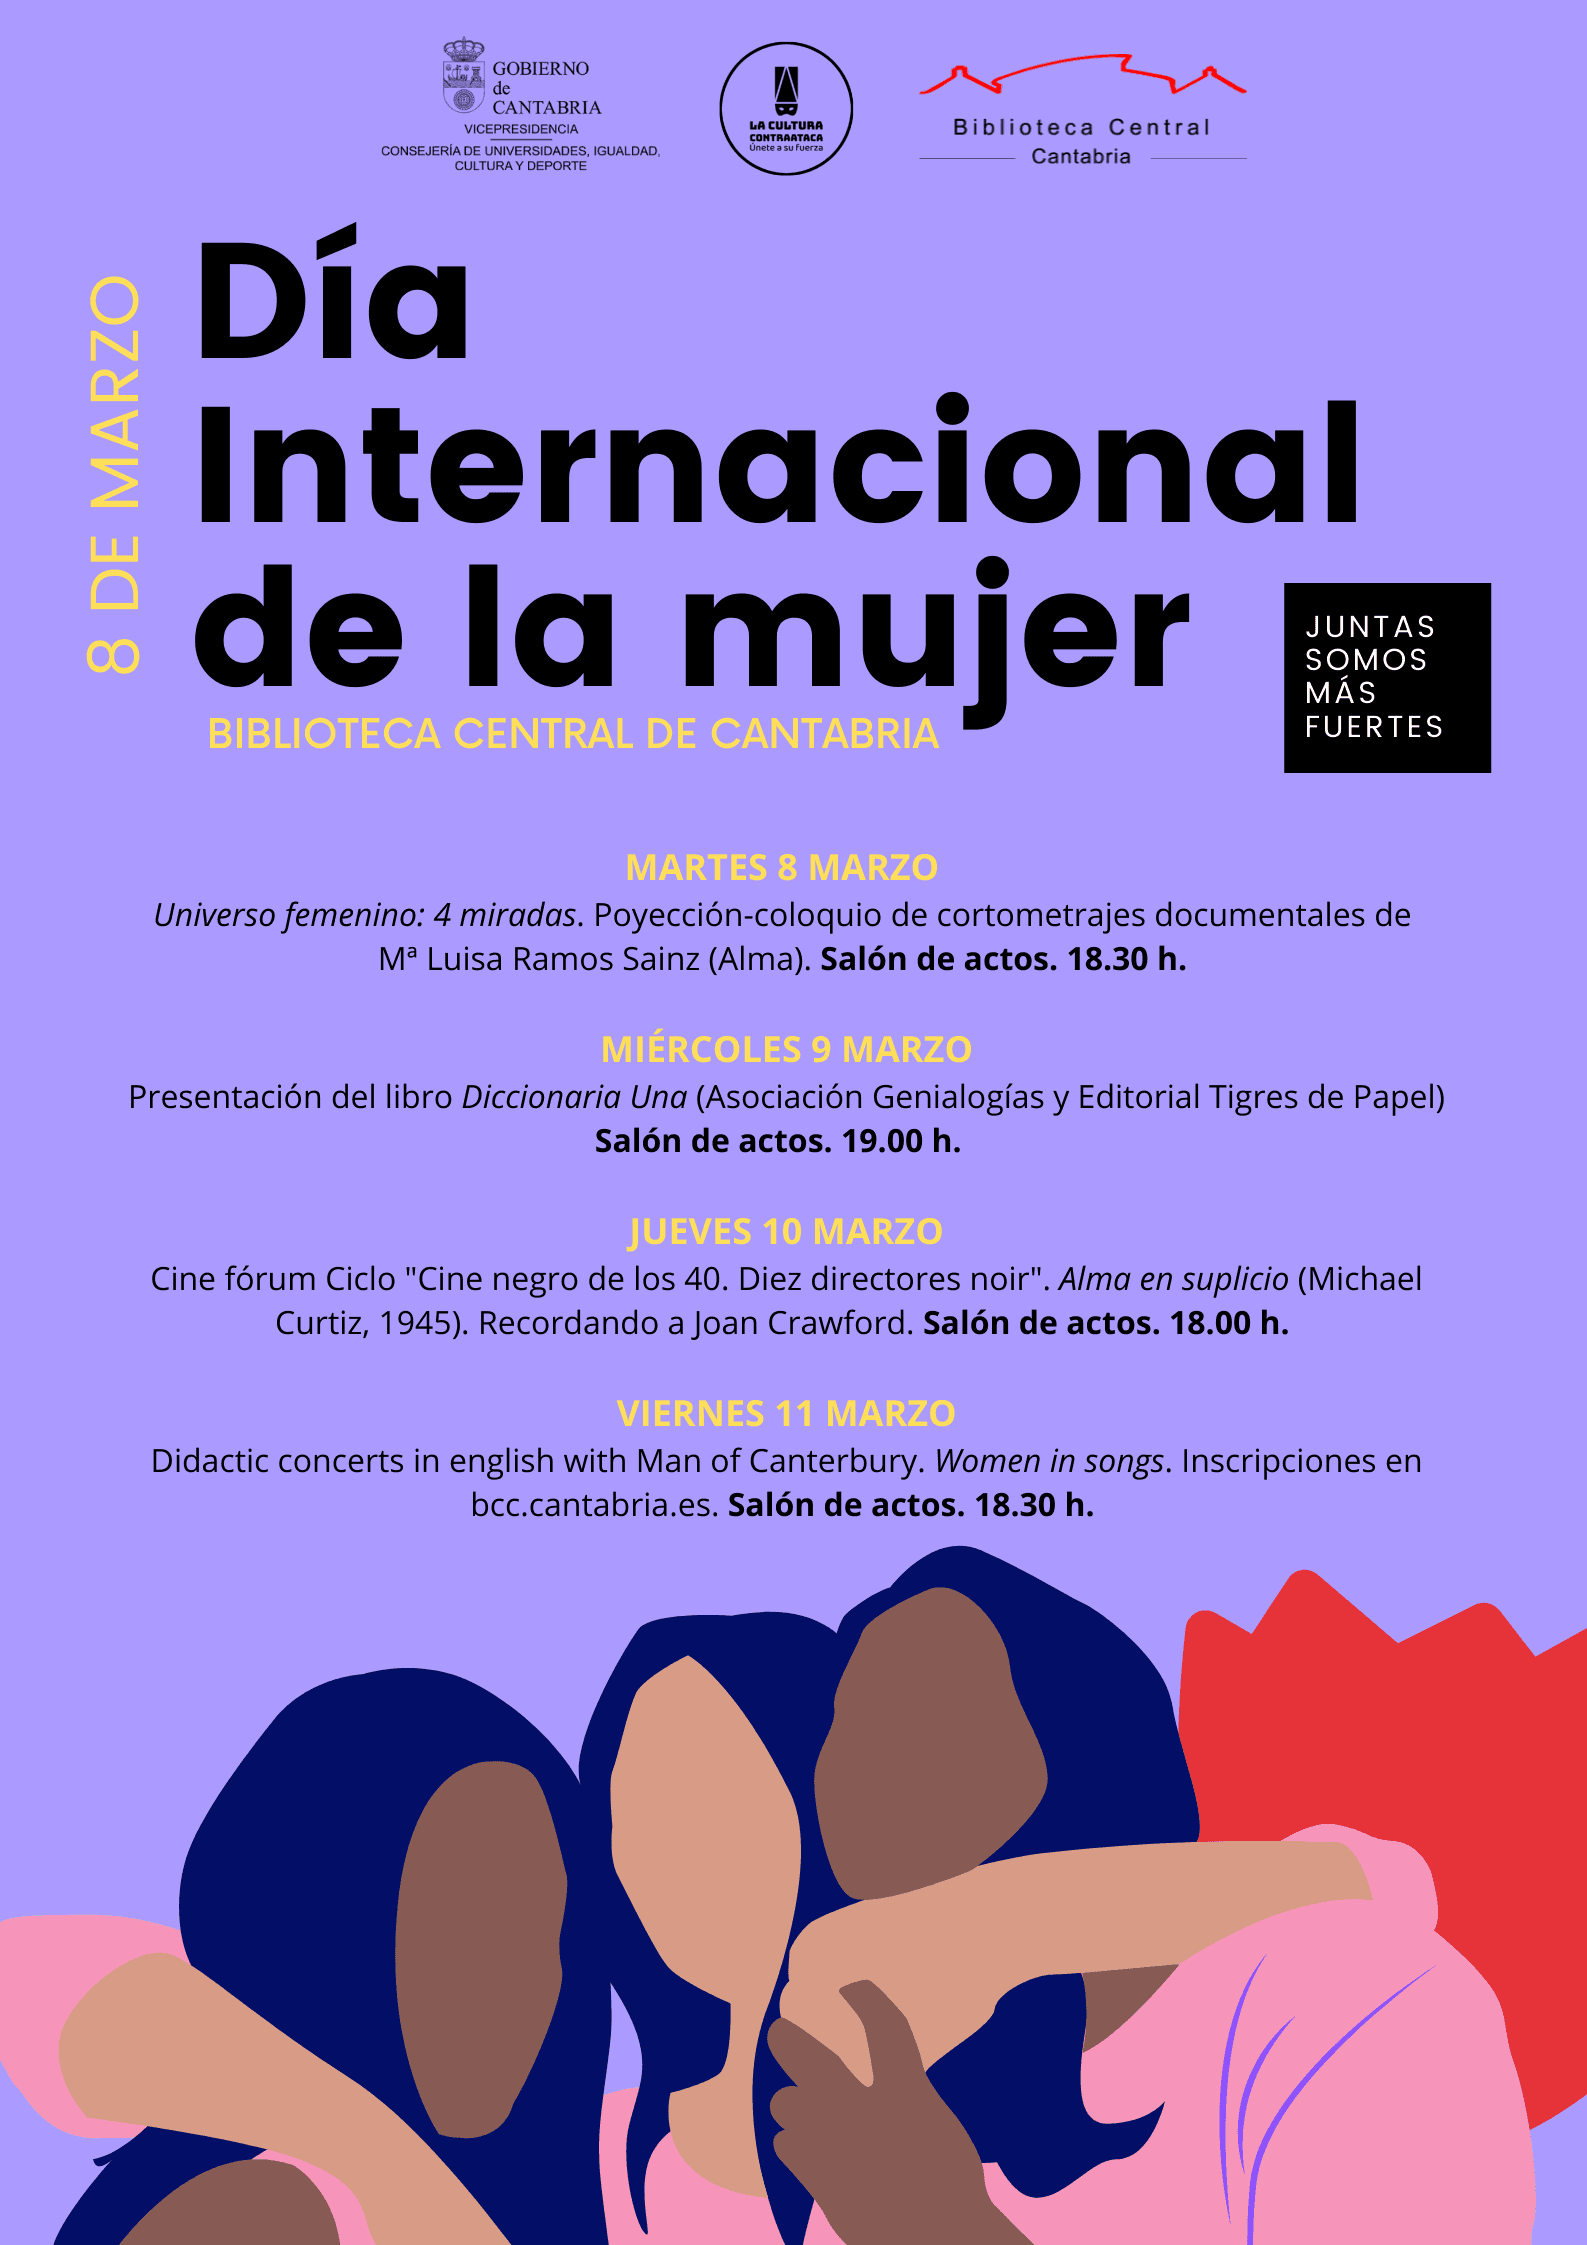 Actividades Día Internacional de la Mujer 2022 en la Biblioteca Central de Cantabria